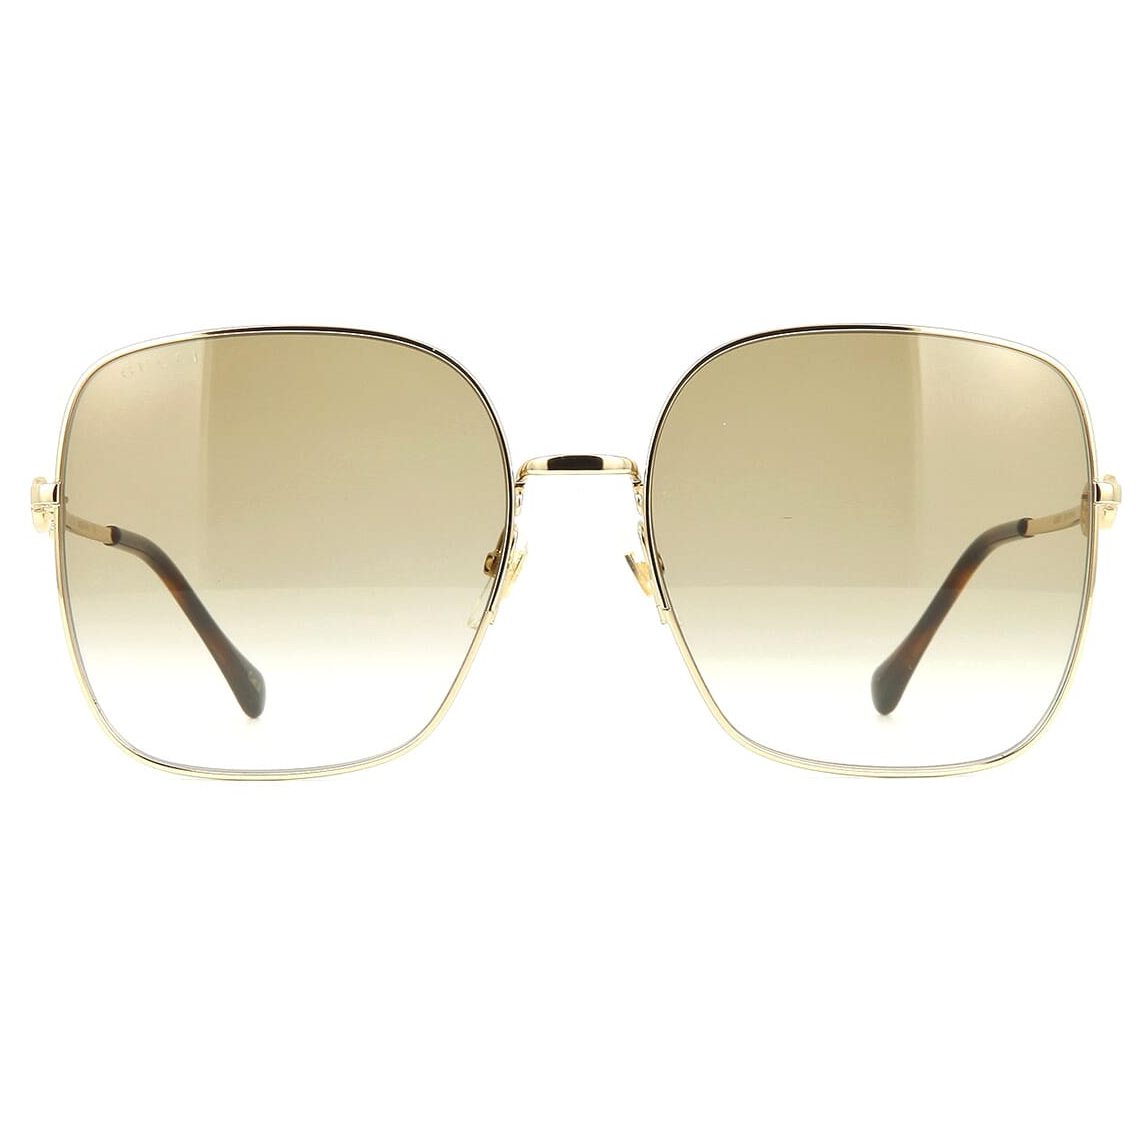 Gucci GG0879S Sunglasses - Purevision - The Sunglasses Shop in Queens